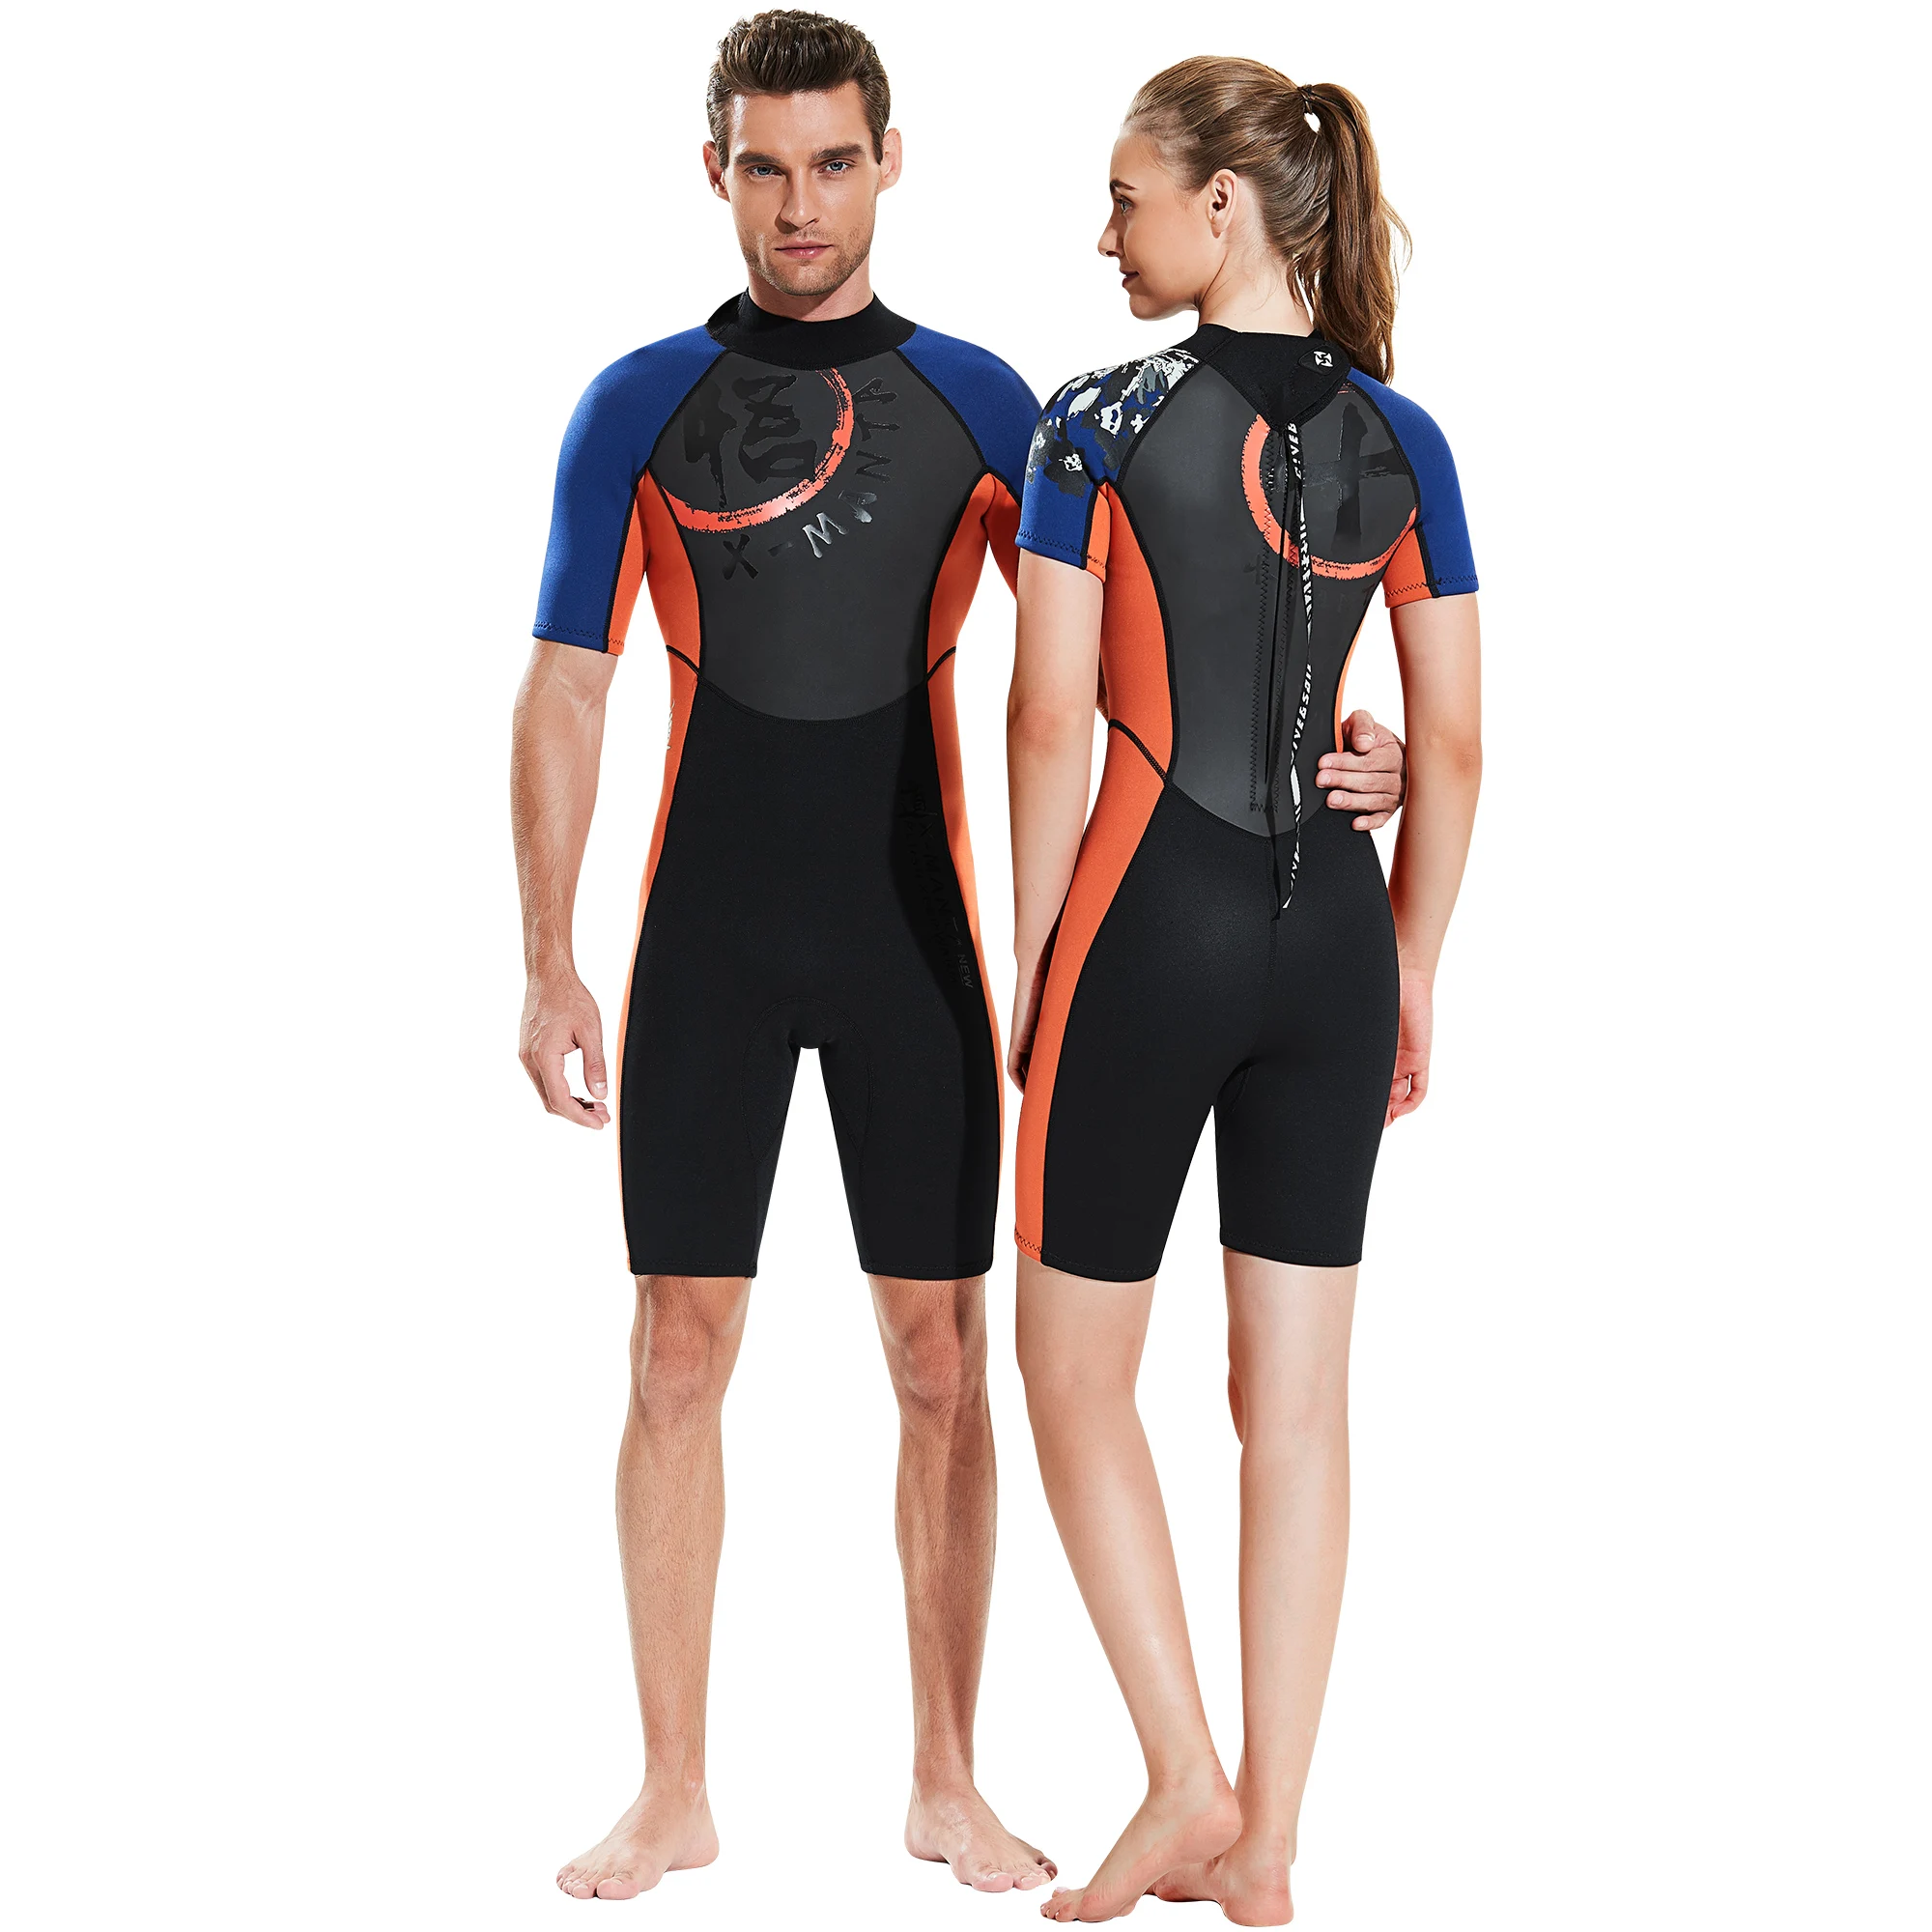 1,5 мм неопрен+ Акула кожа короткий костюм для дайвинга Цельный купальник для серфинга костюм для мужчин и женщин подводное плавание